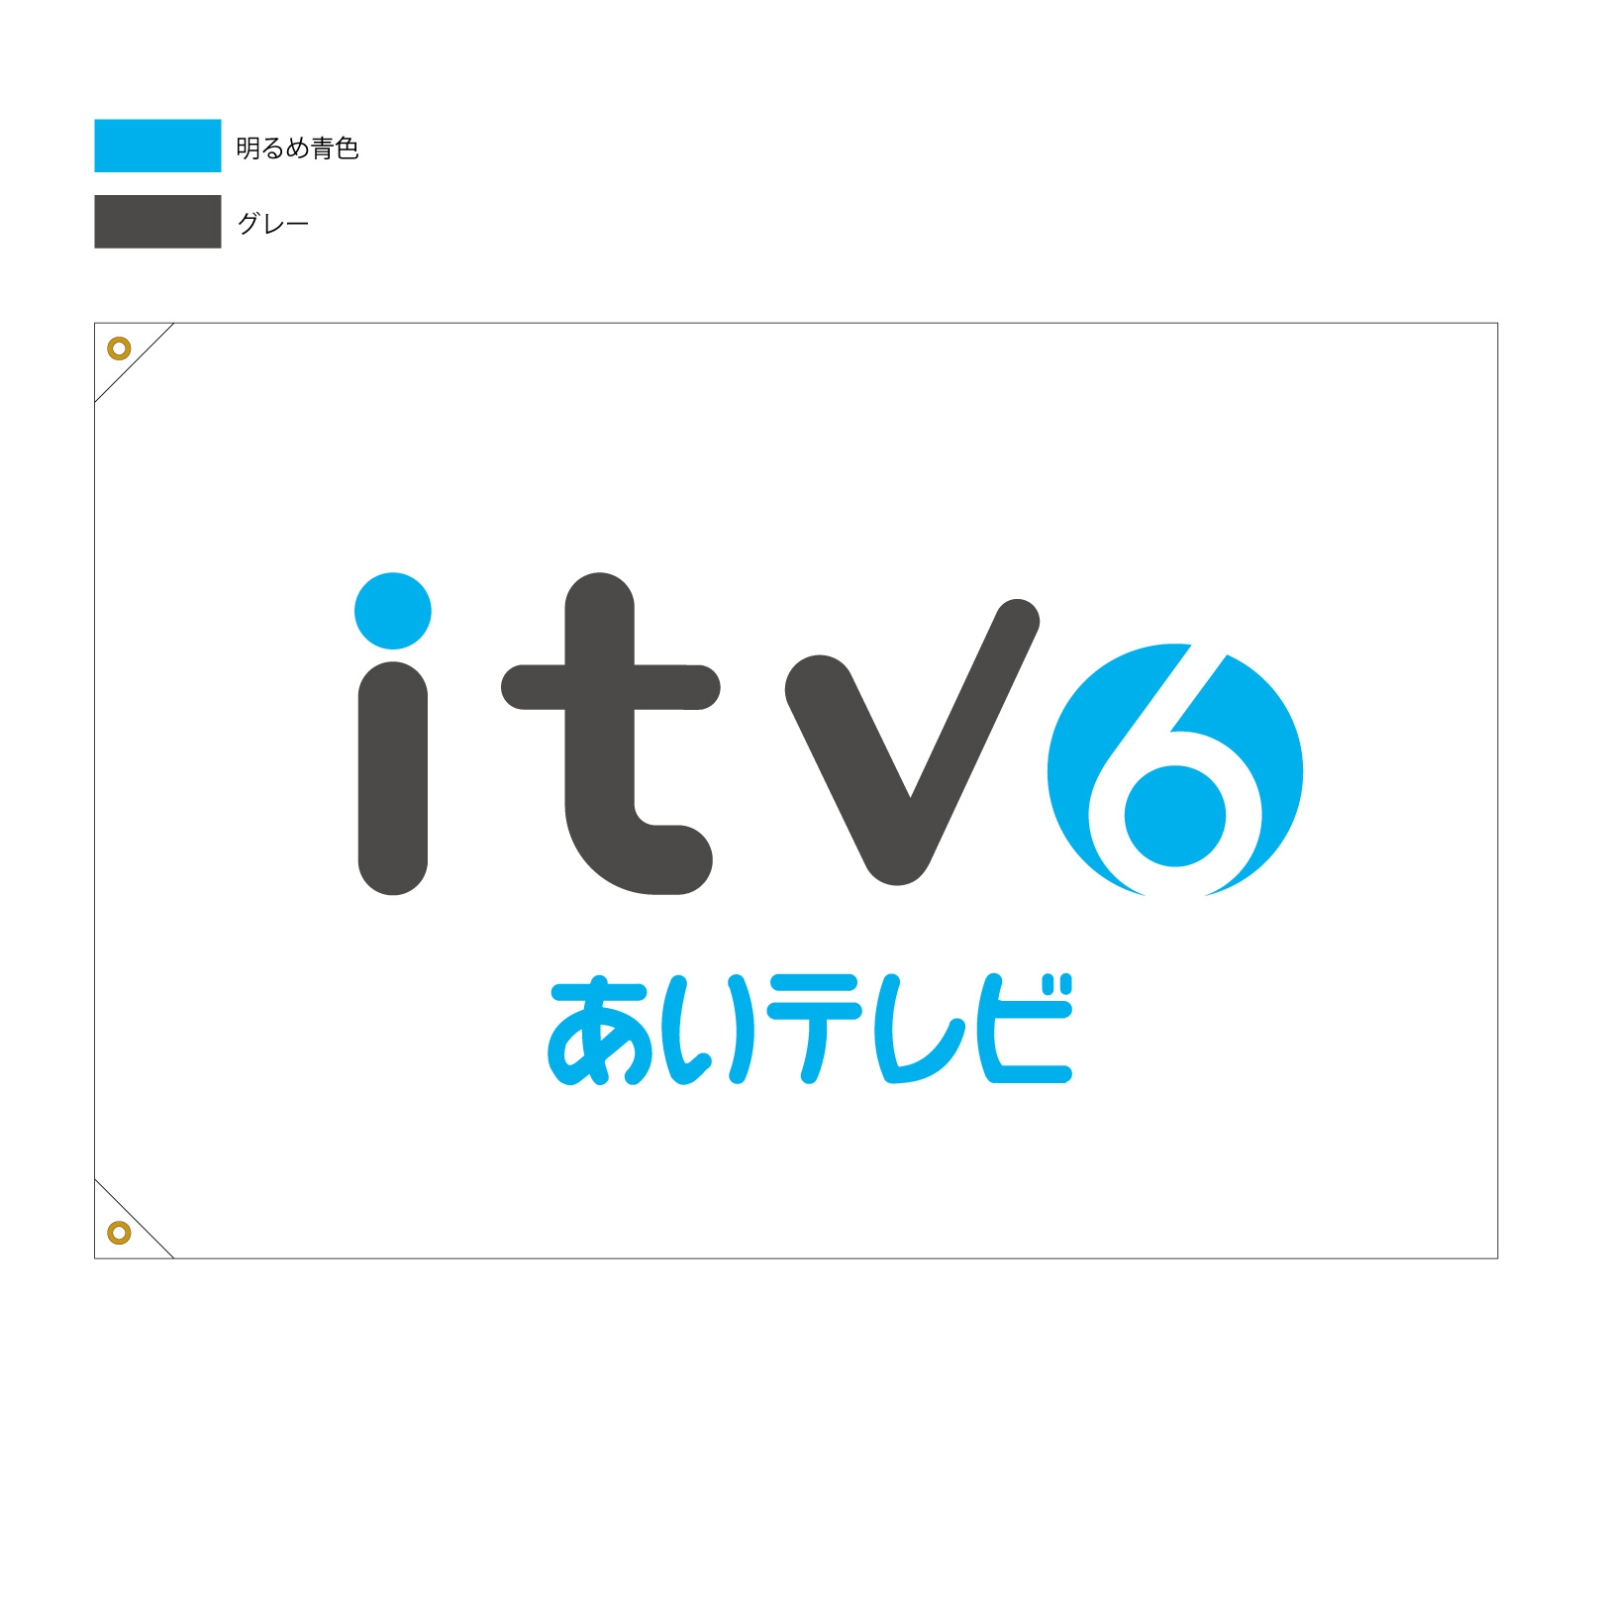 テレビ局の旗